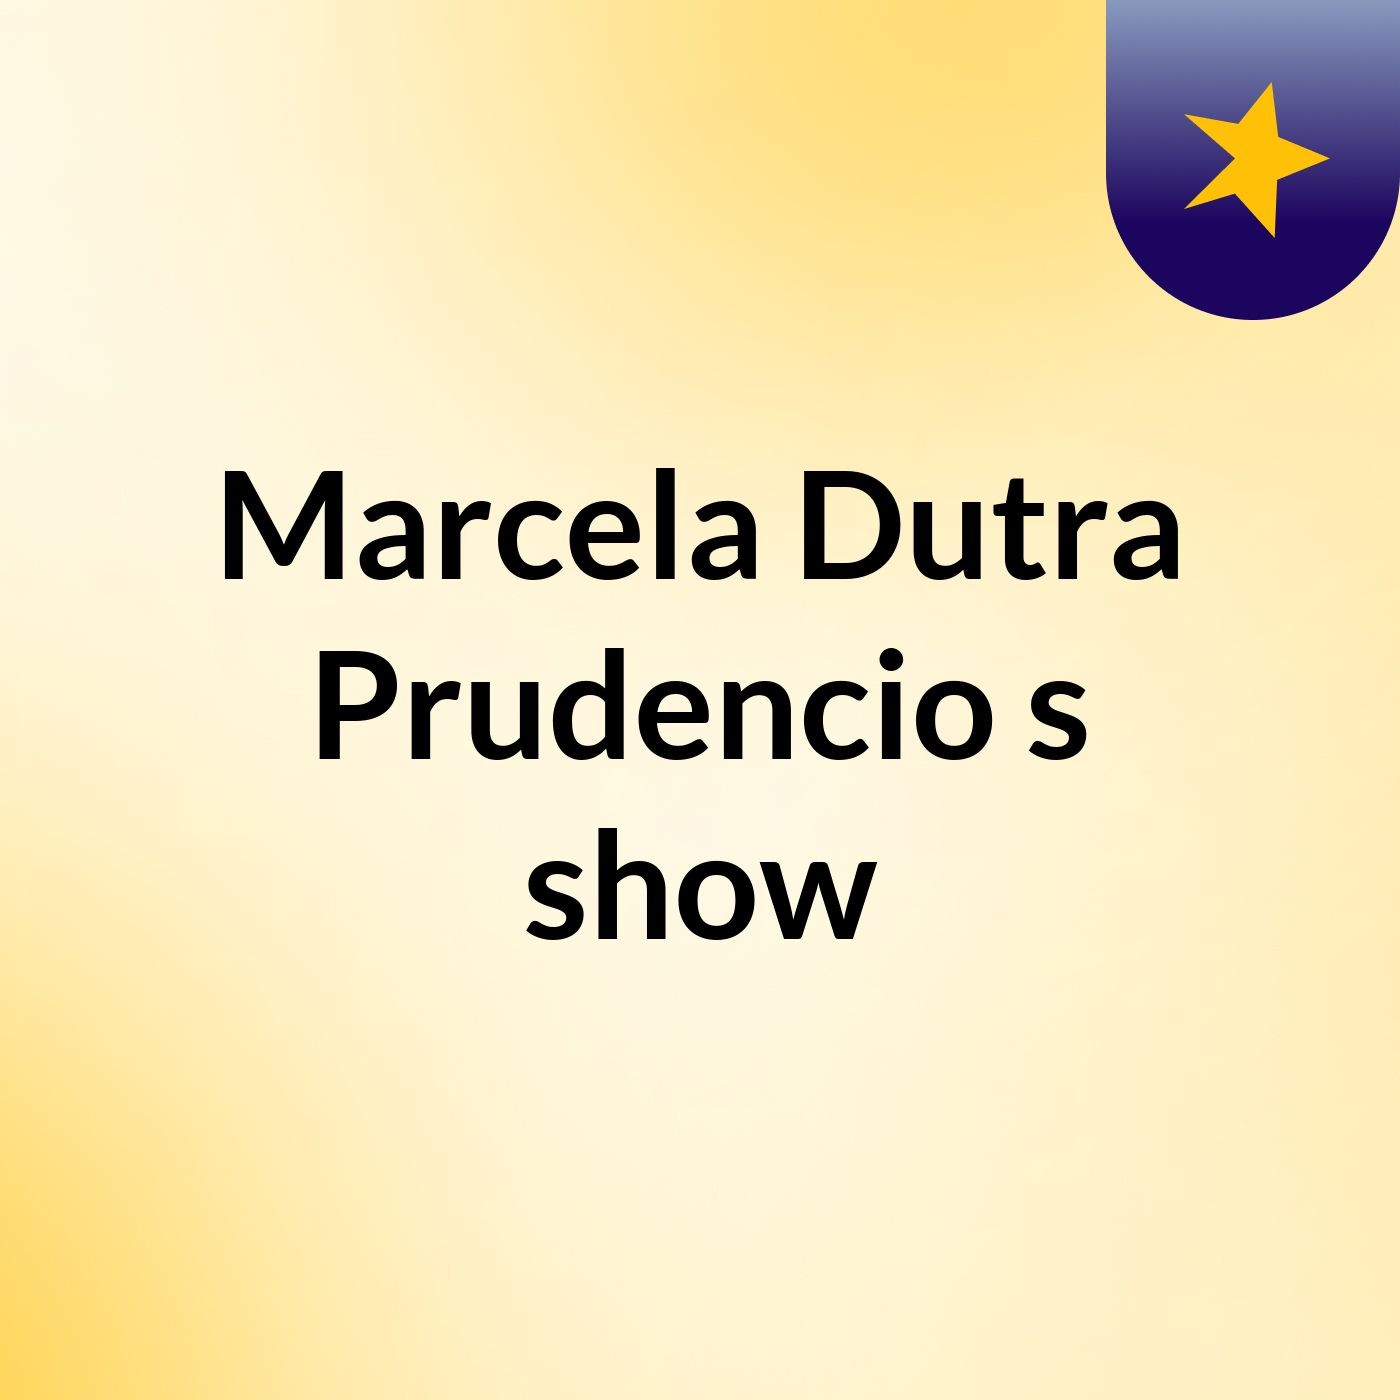 Marcela Dutra Prudencio's show